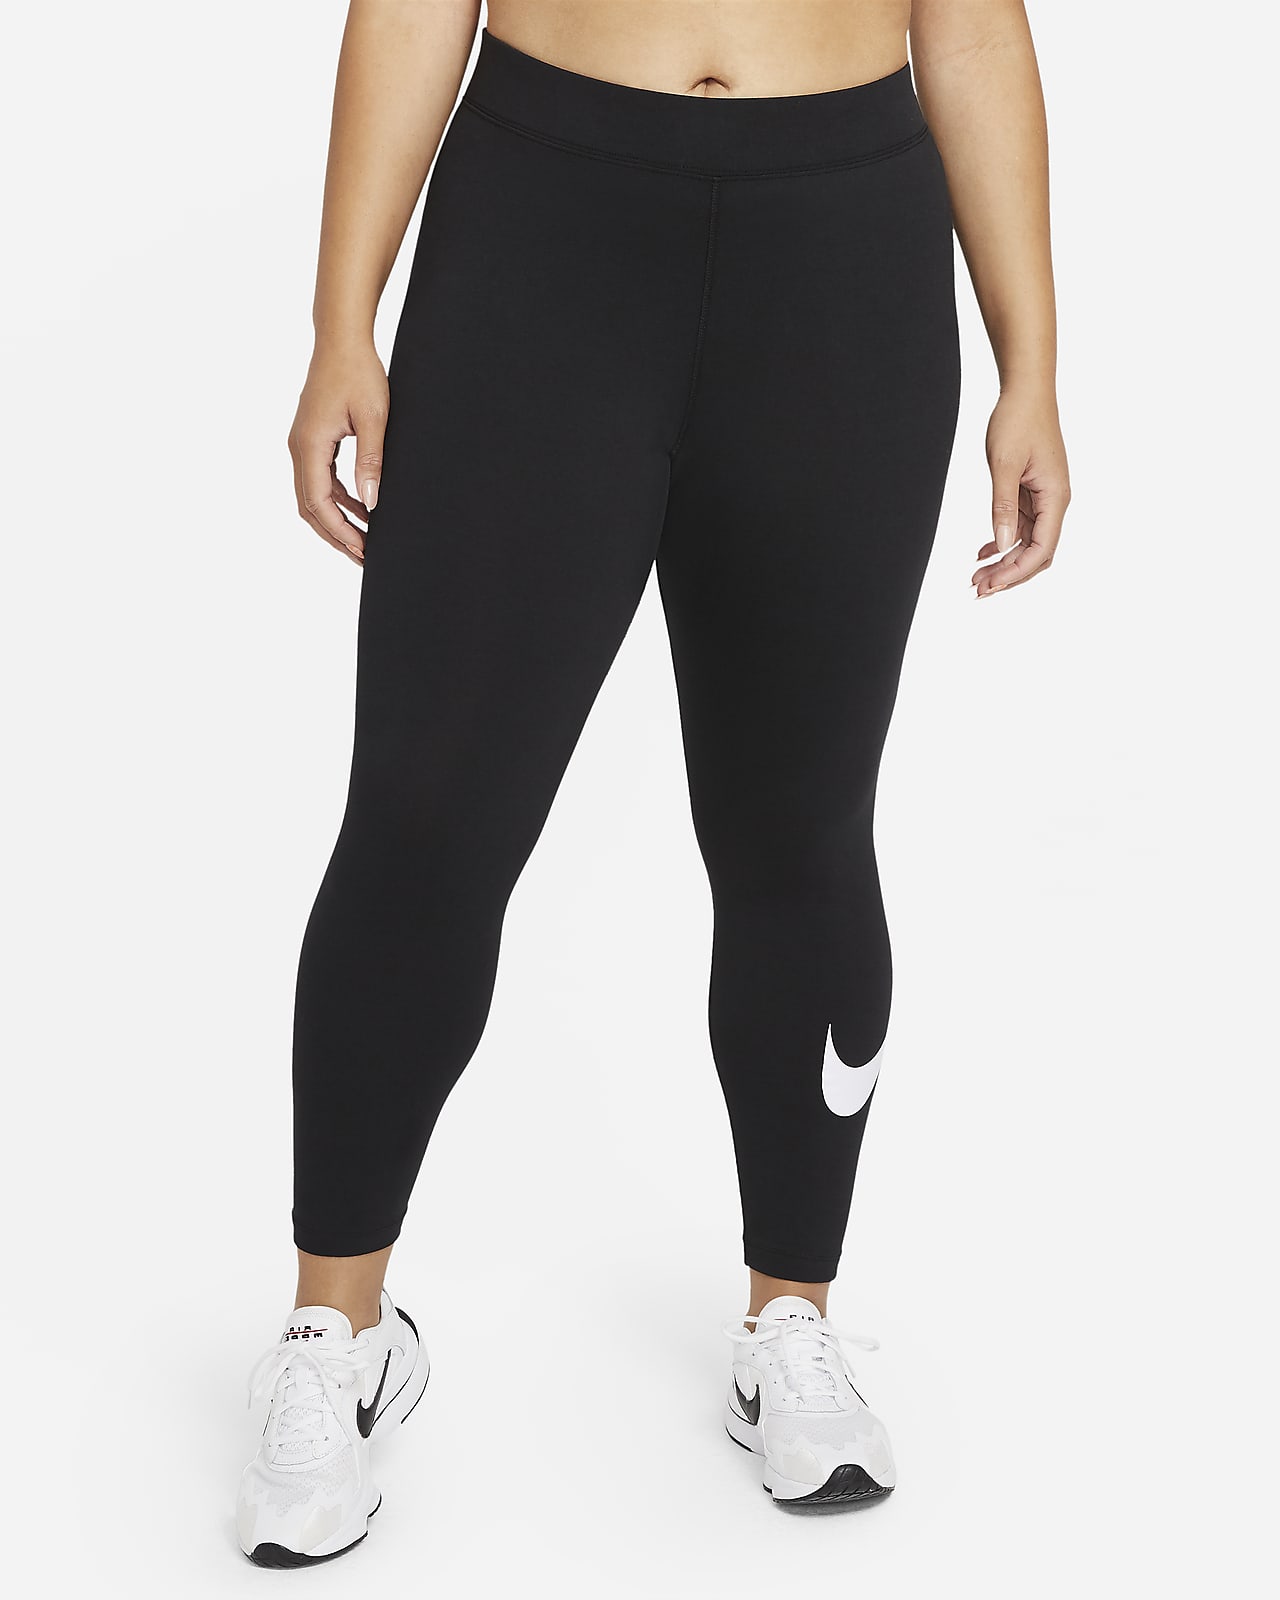 Essential Swoosh met halfhoge taille voor dames (grote maten). Nike